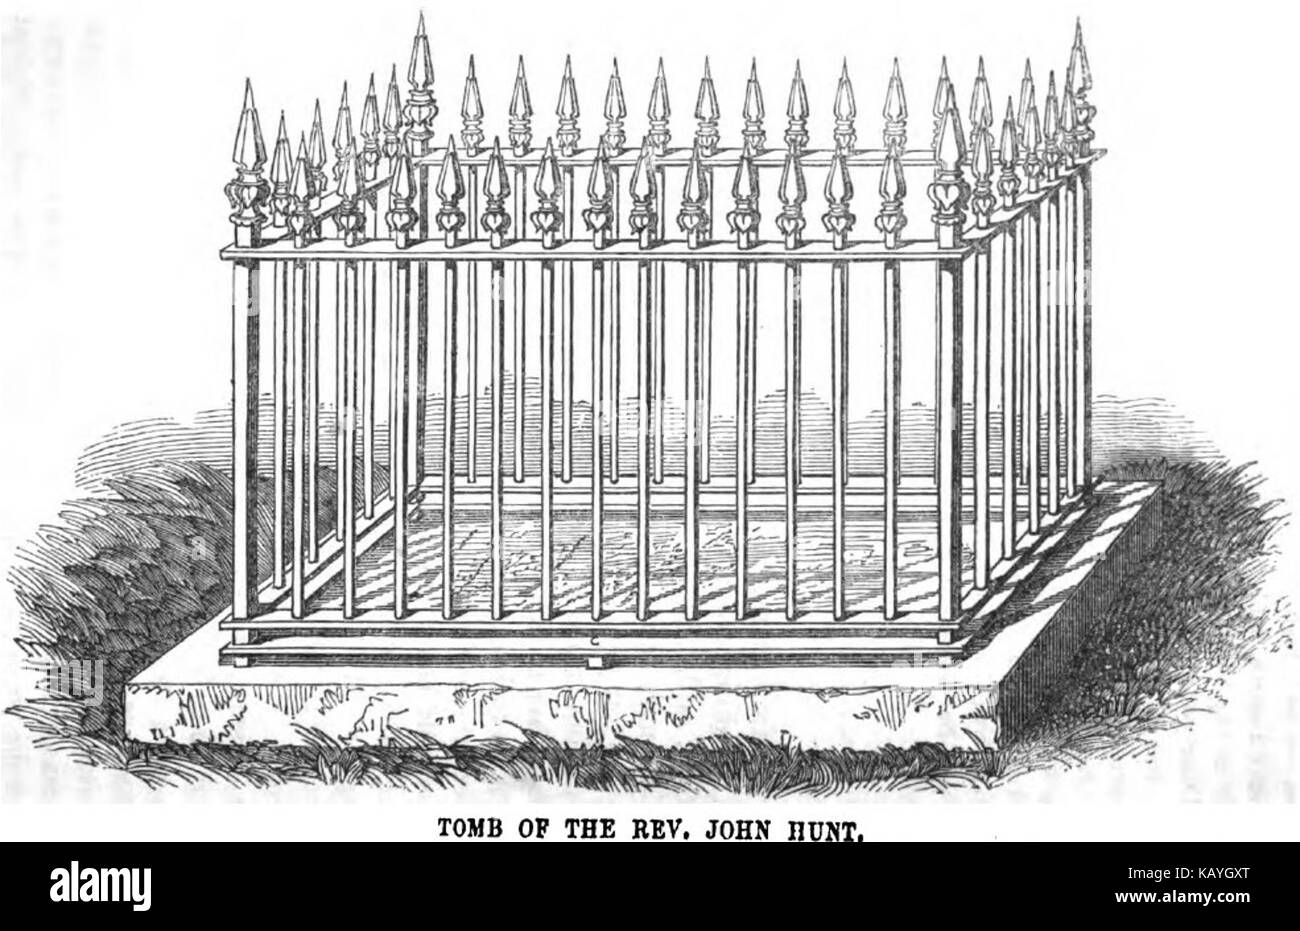 Tomb of Rev. John Hunt, Vewa, Feejee (VII, p.66, June 1950)   Copy Stock Photo